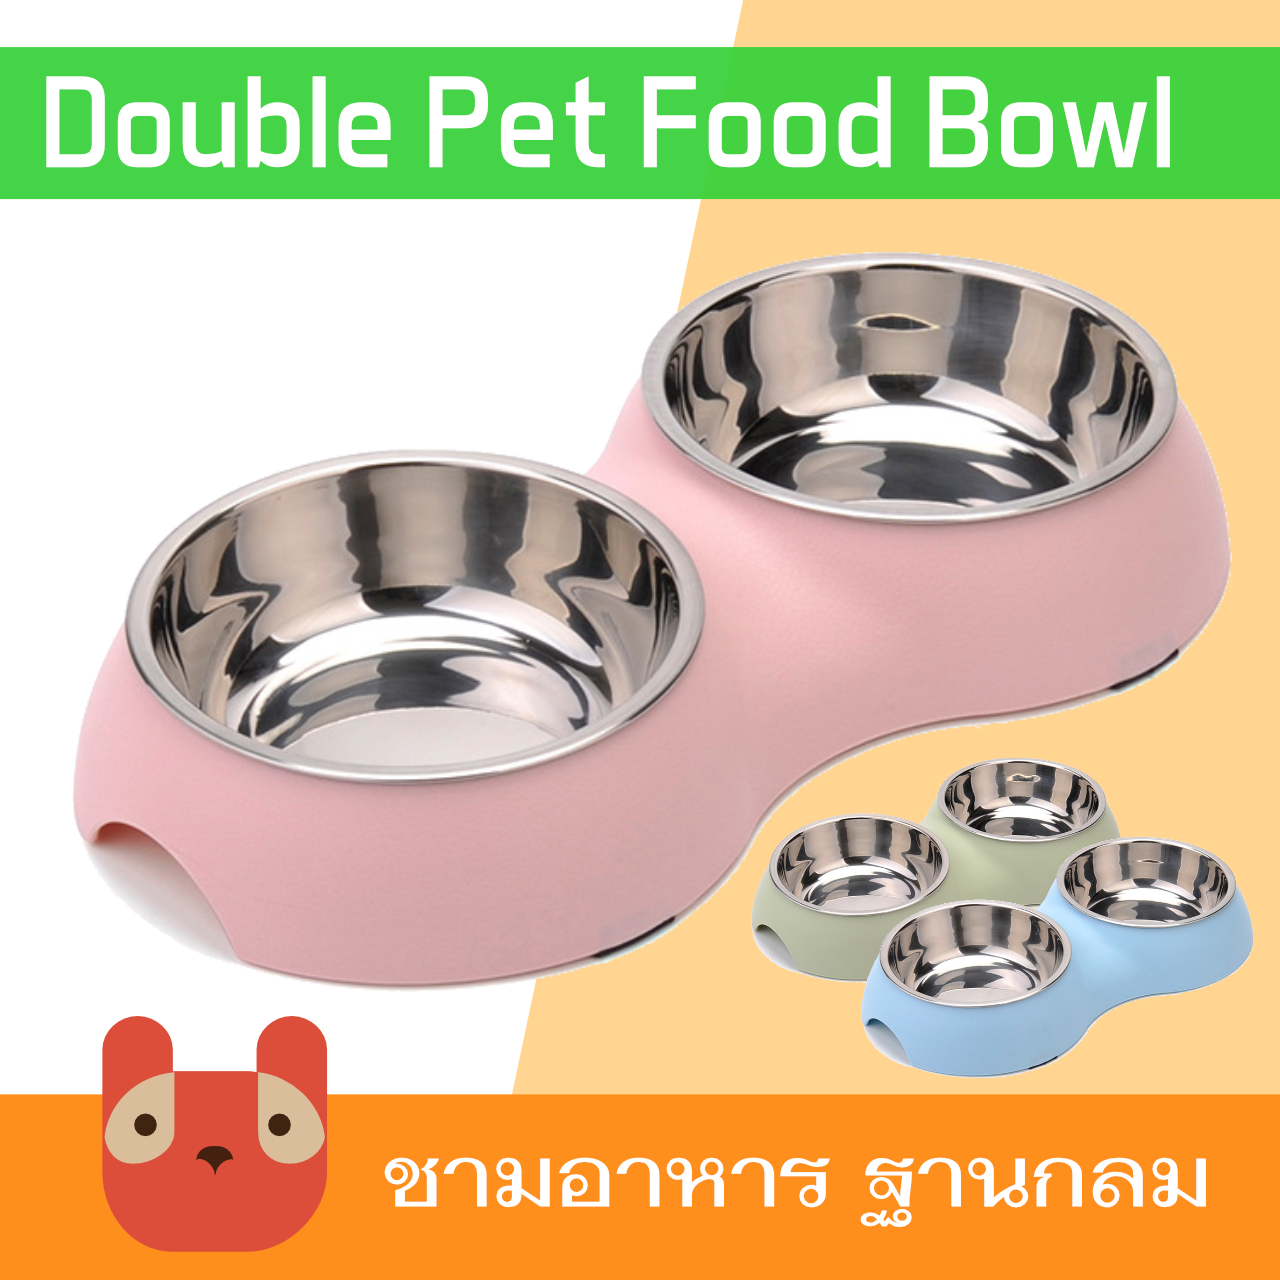 ชามอาหารสัตว์เลี้ยง ชามอาหารสุนัข ชามอาหารแมว ฐานกลม (BO907)